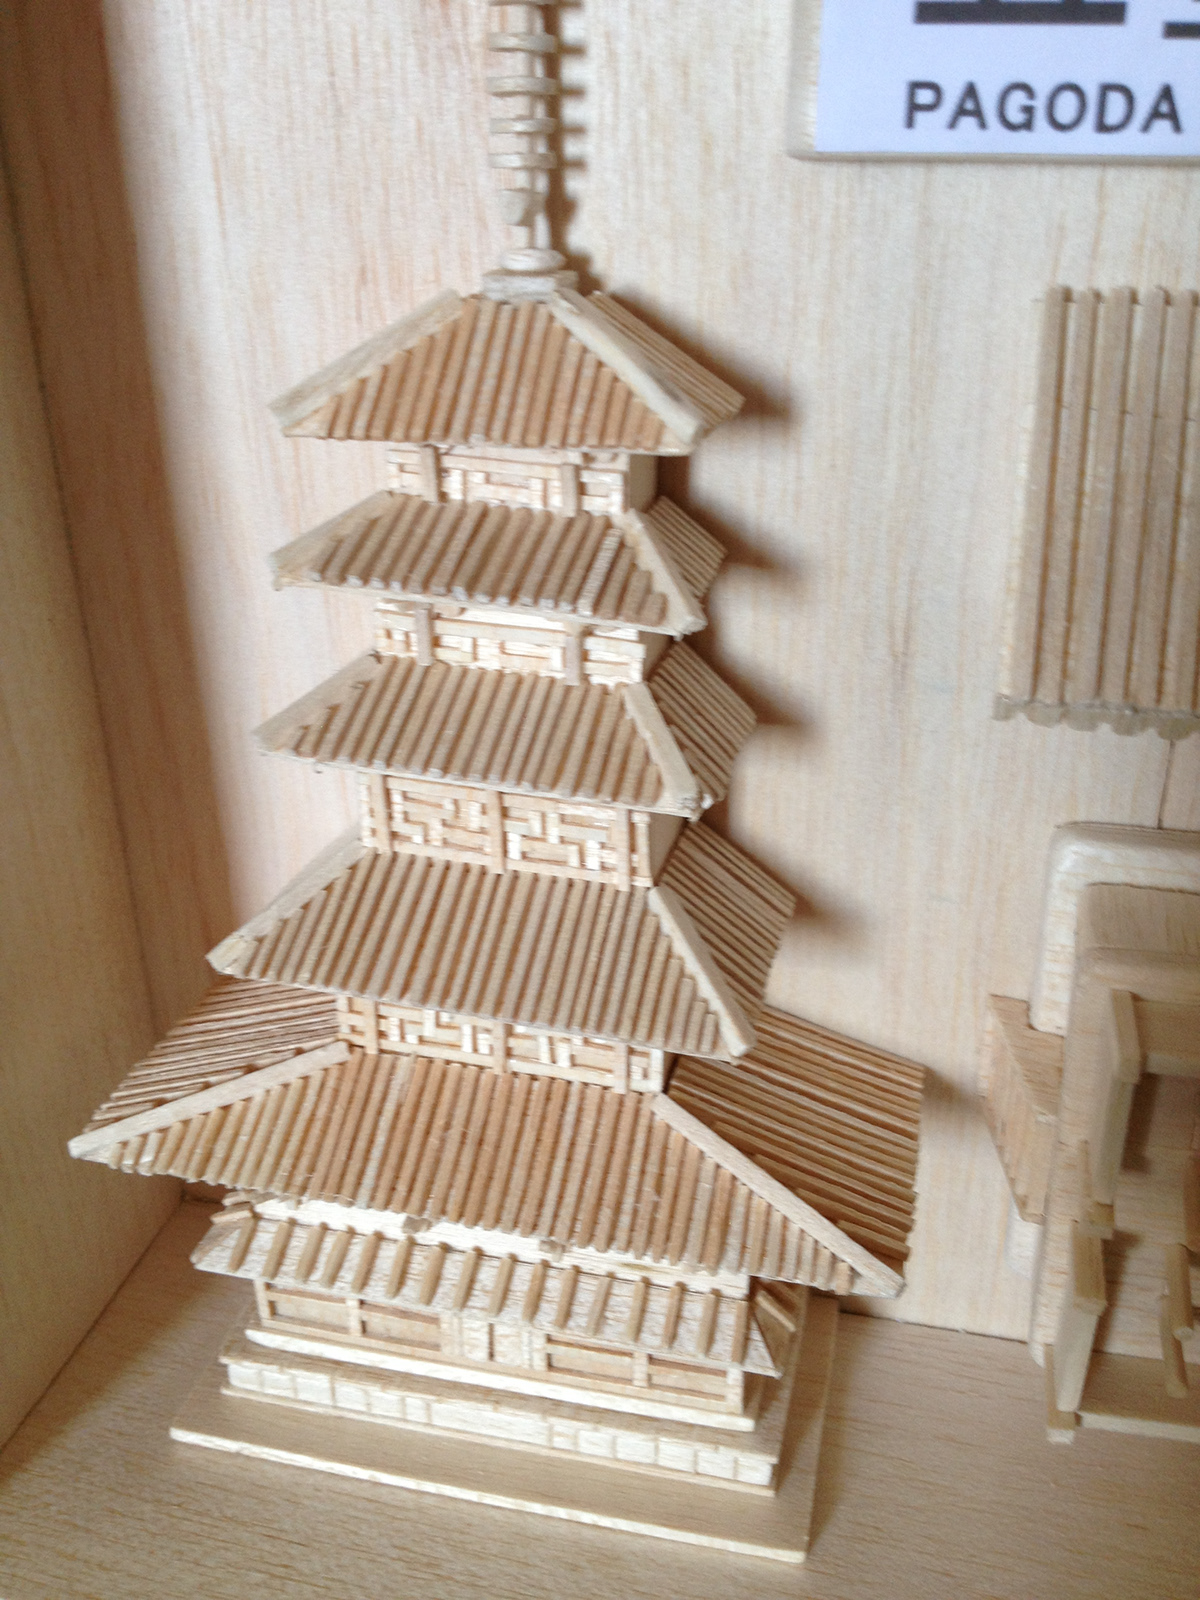 Model Making pagoda horyuji temple